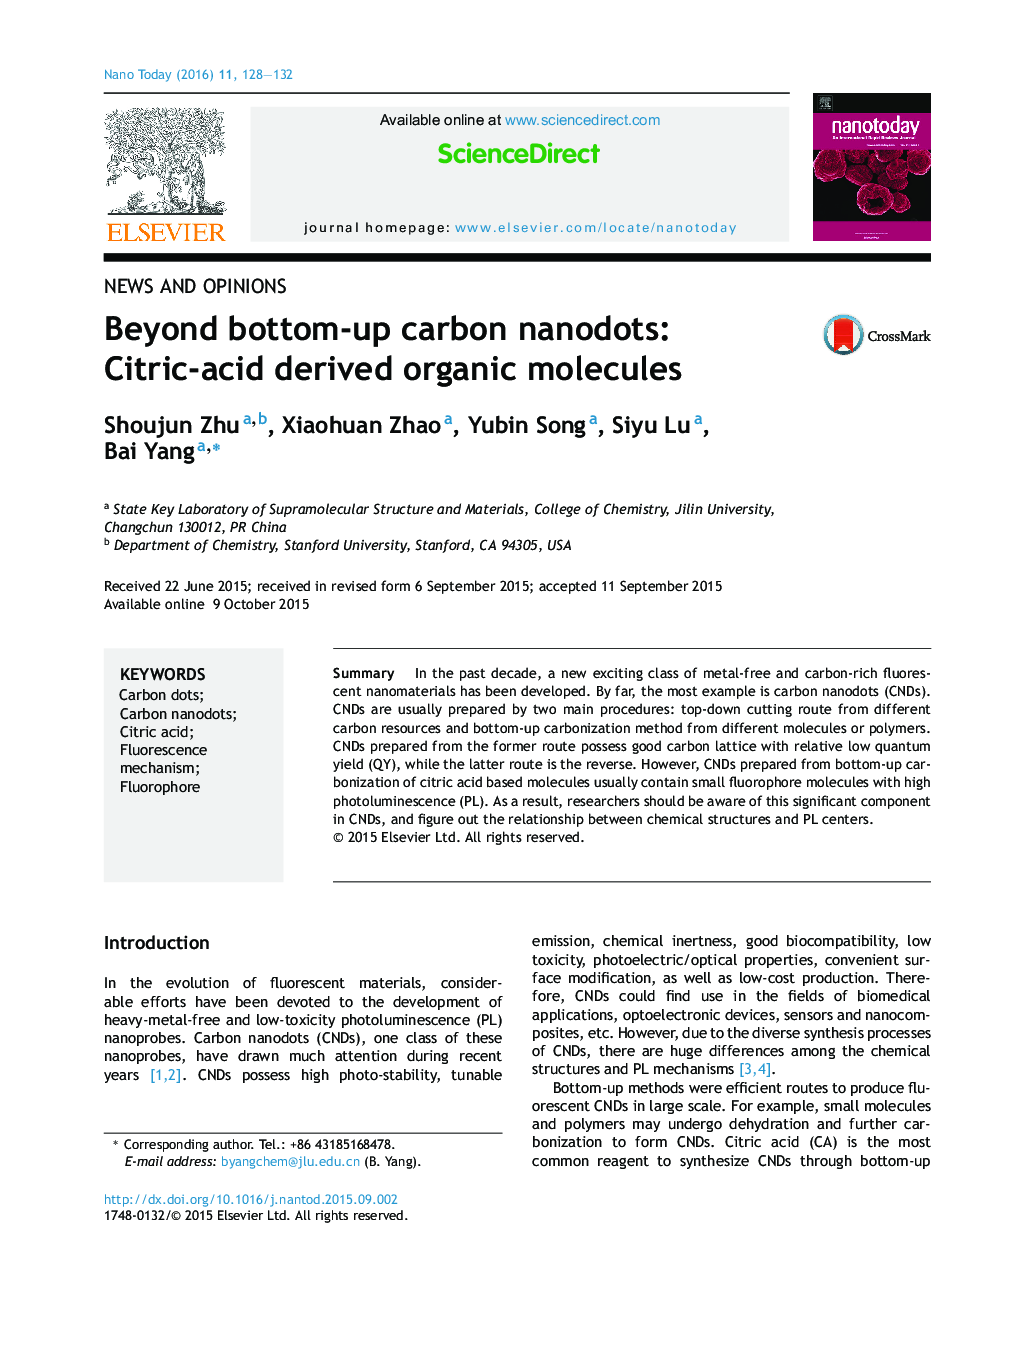 نانولوله های کربنی از پایین به بالا: مولکول های ارگانیک مشتق شده از سیتریک اسید